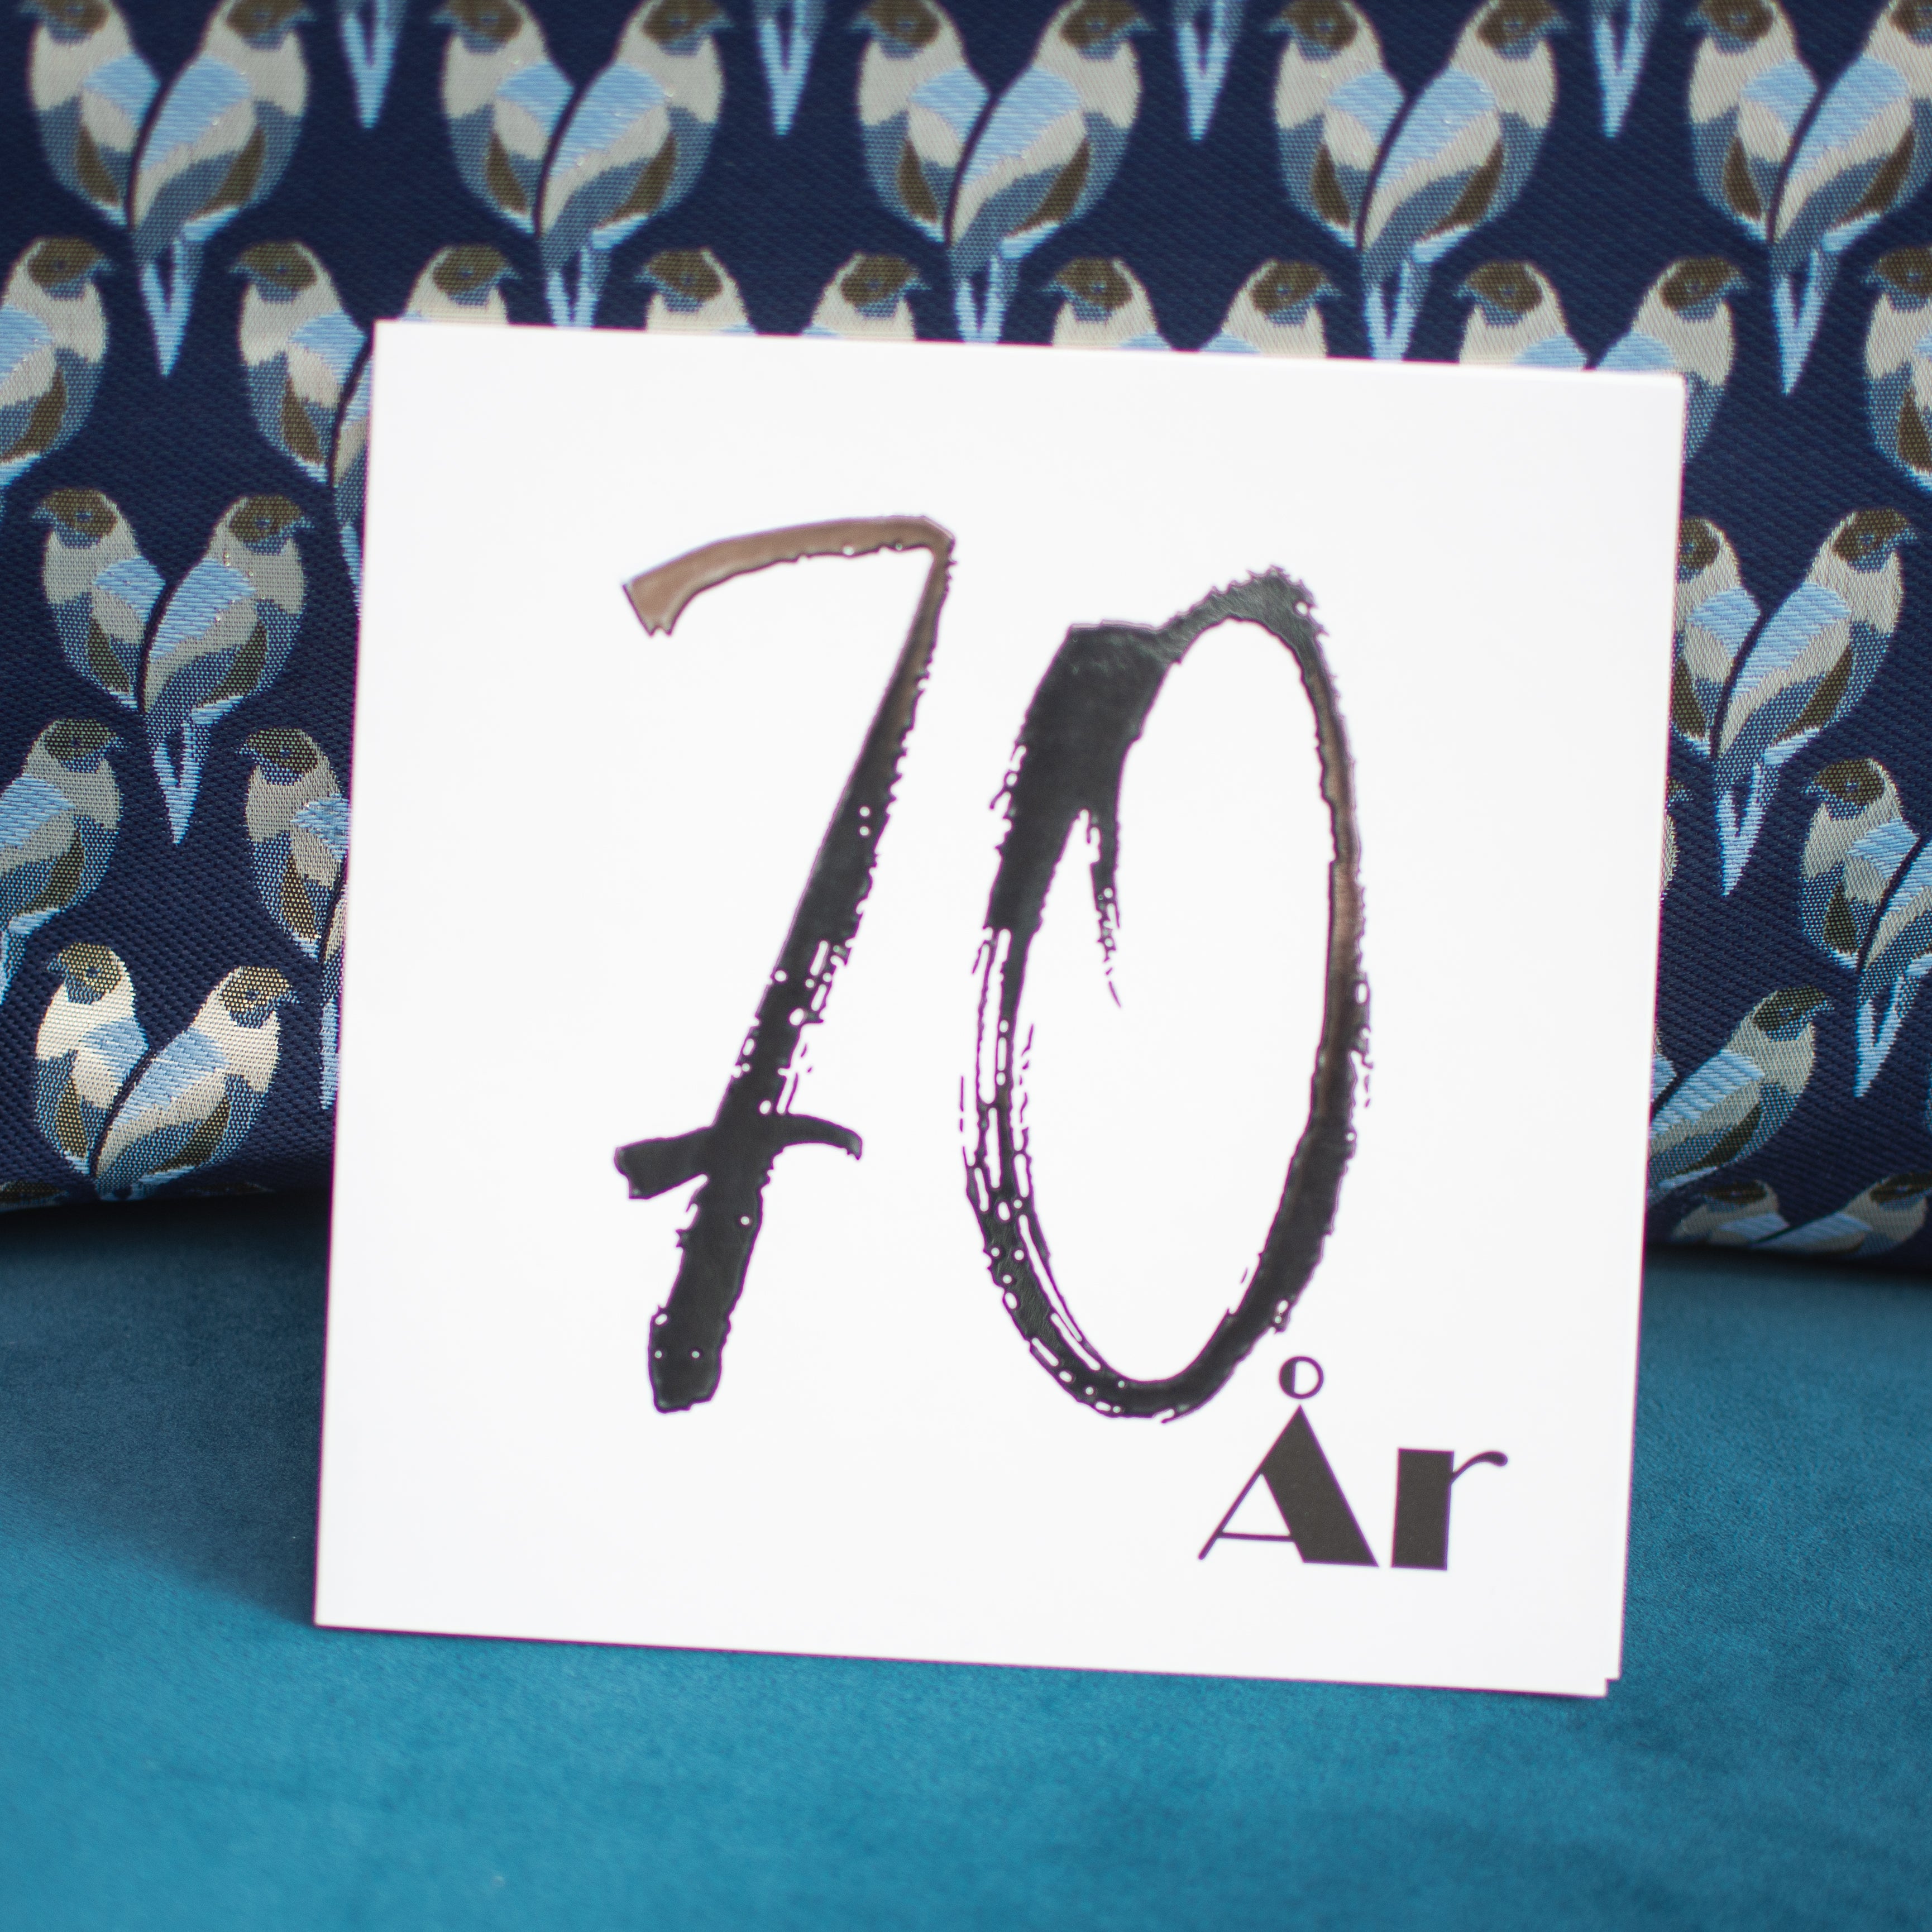 70 YEARS - Birthday and Anniversary cards